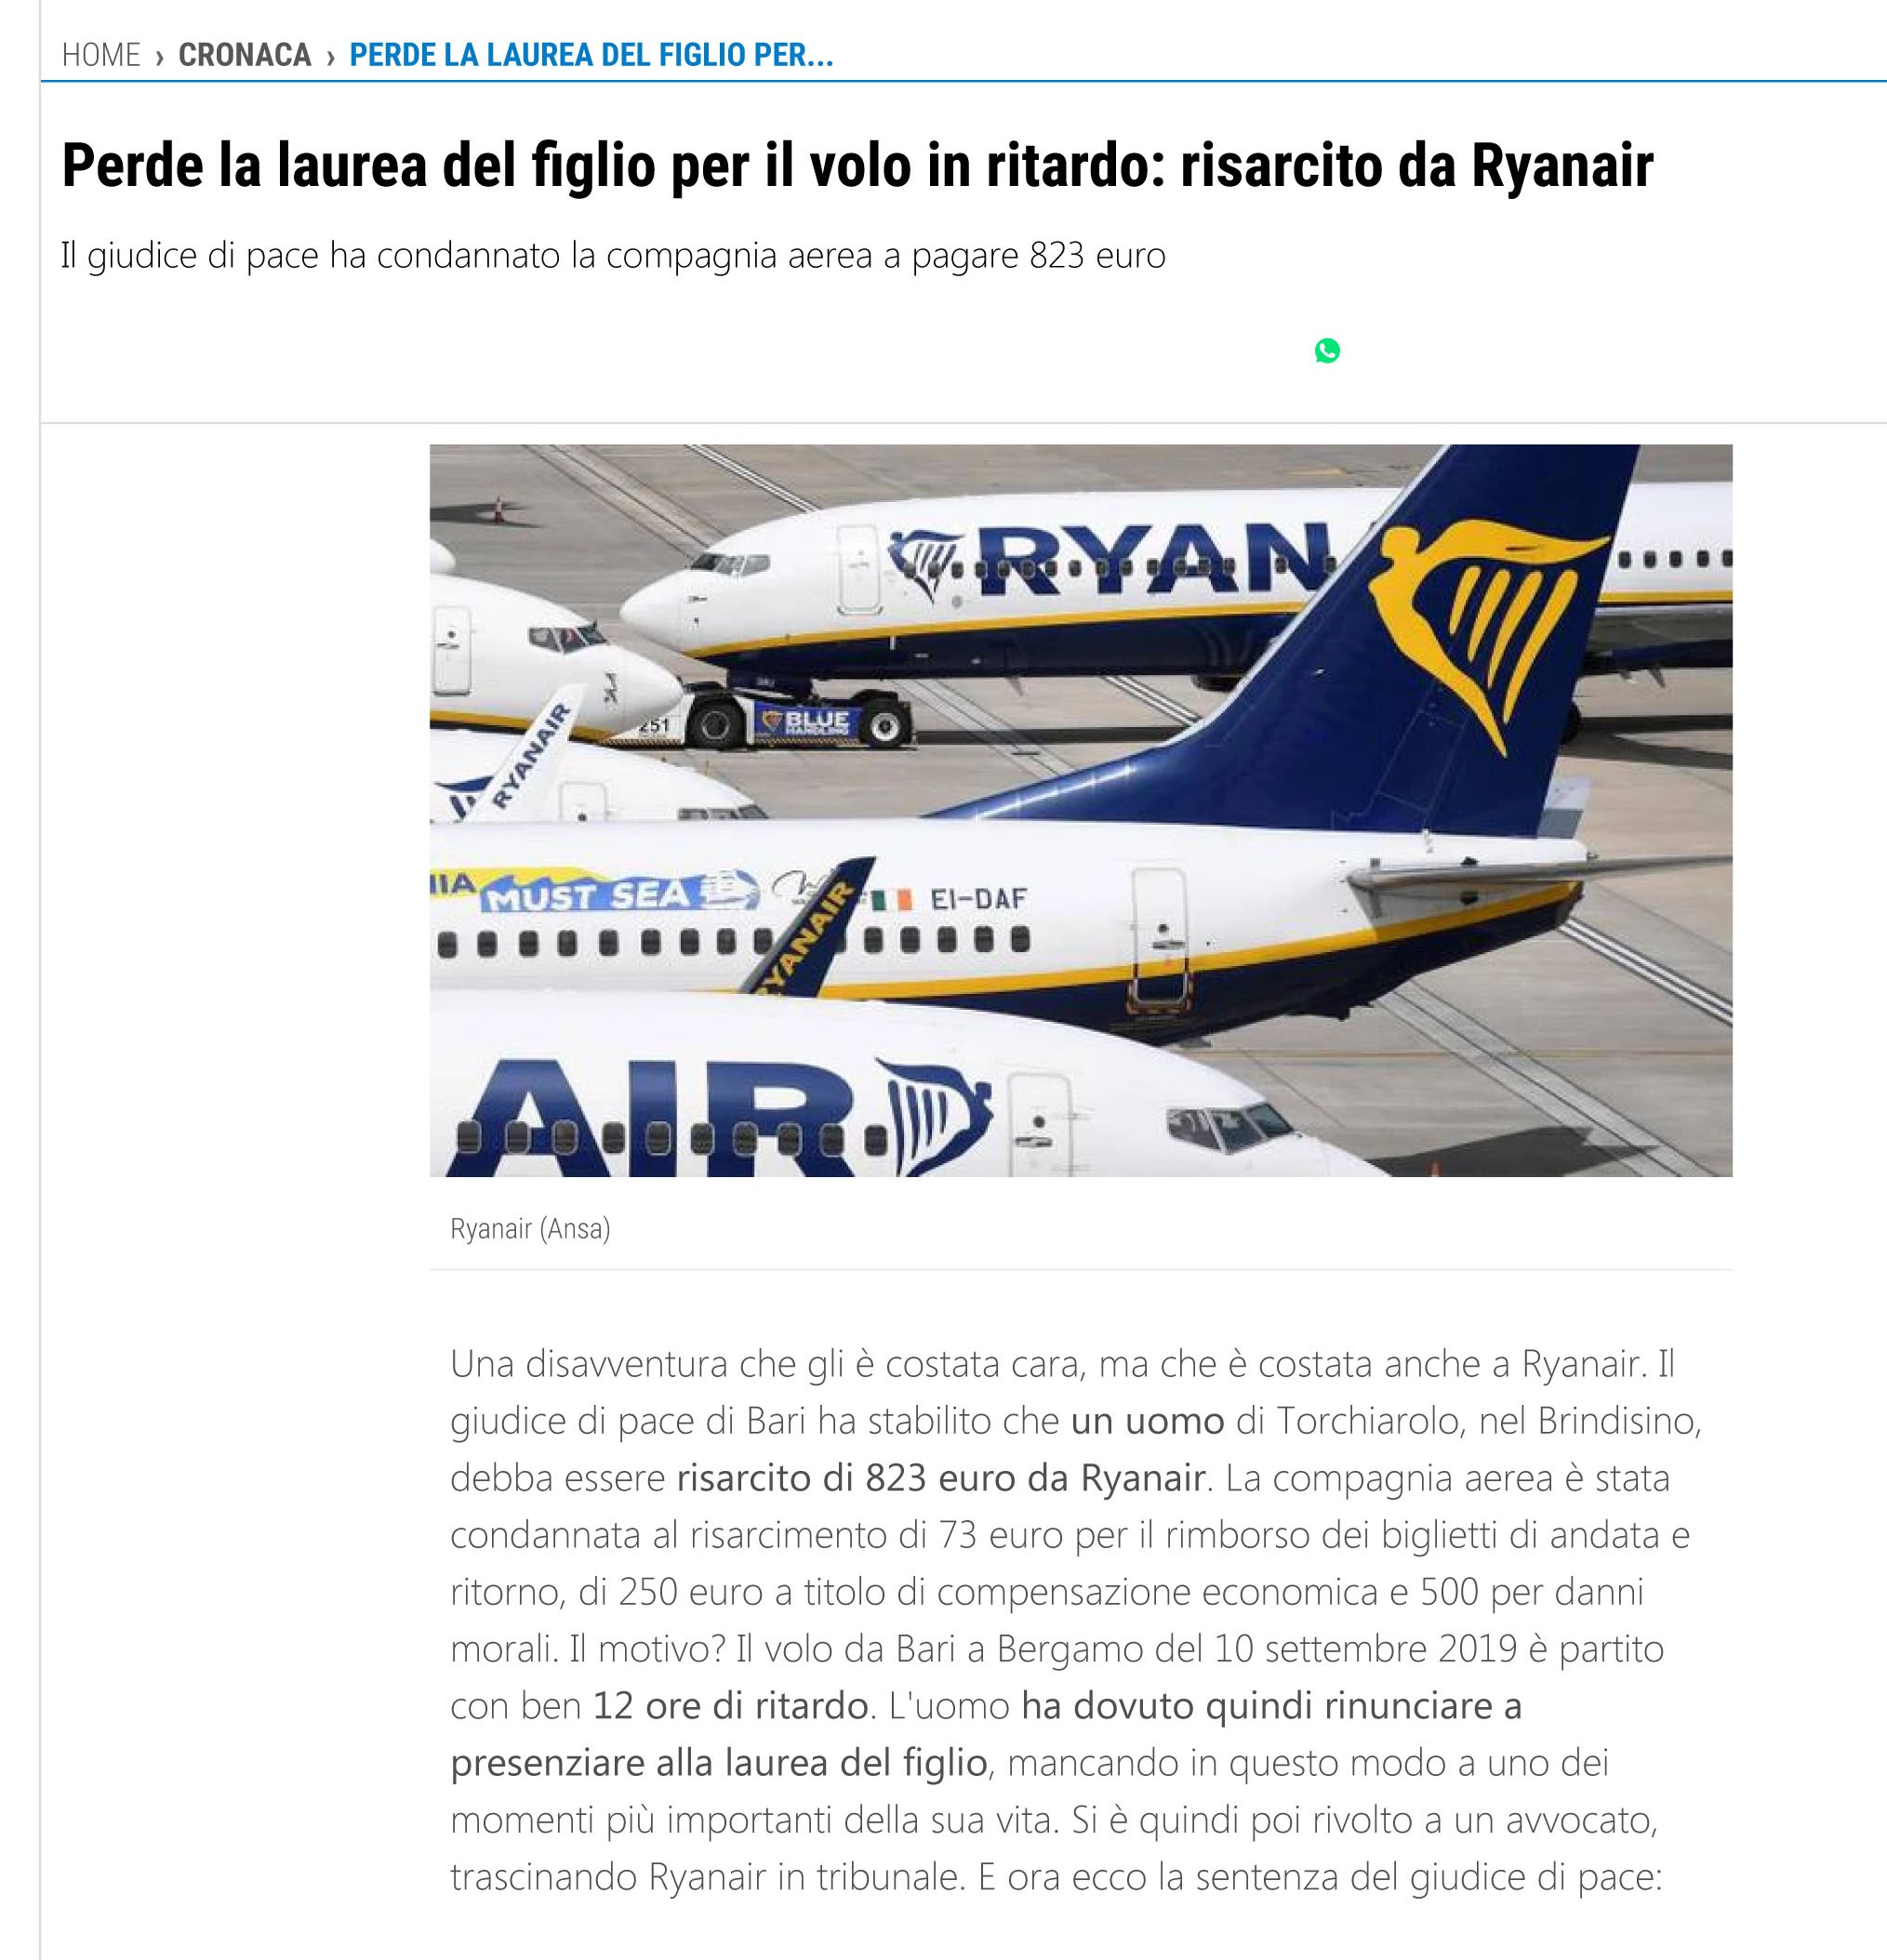 Perde la laurea del figlio per il volo in ritardo: risarcito da Ryanair